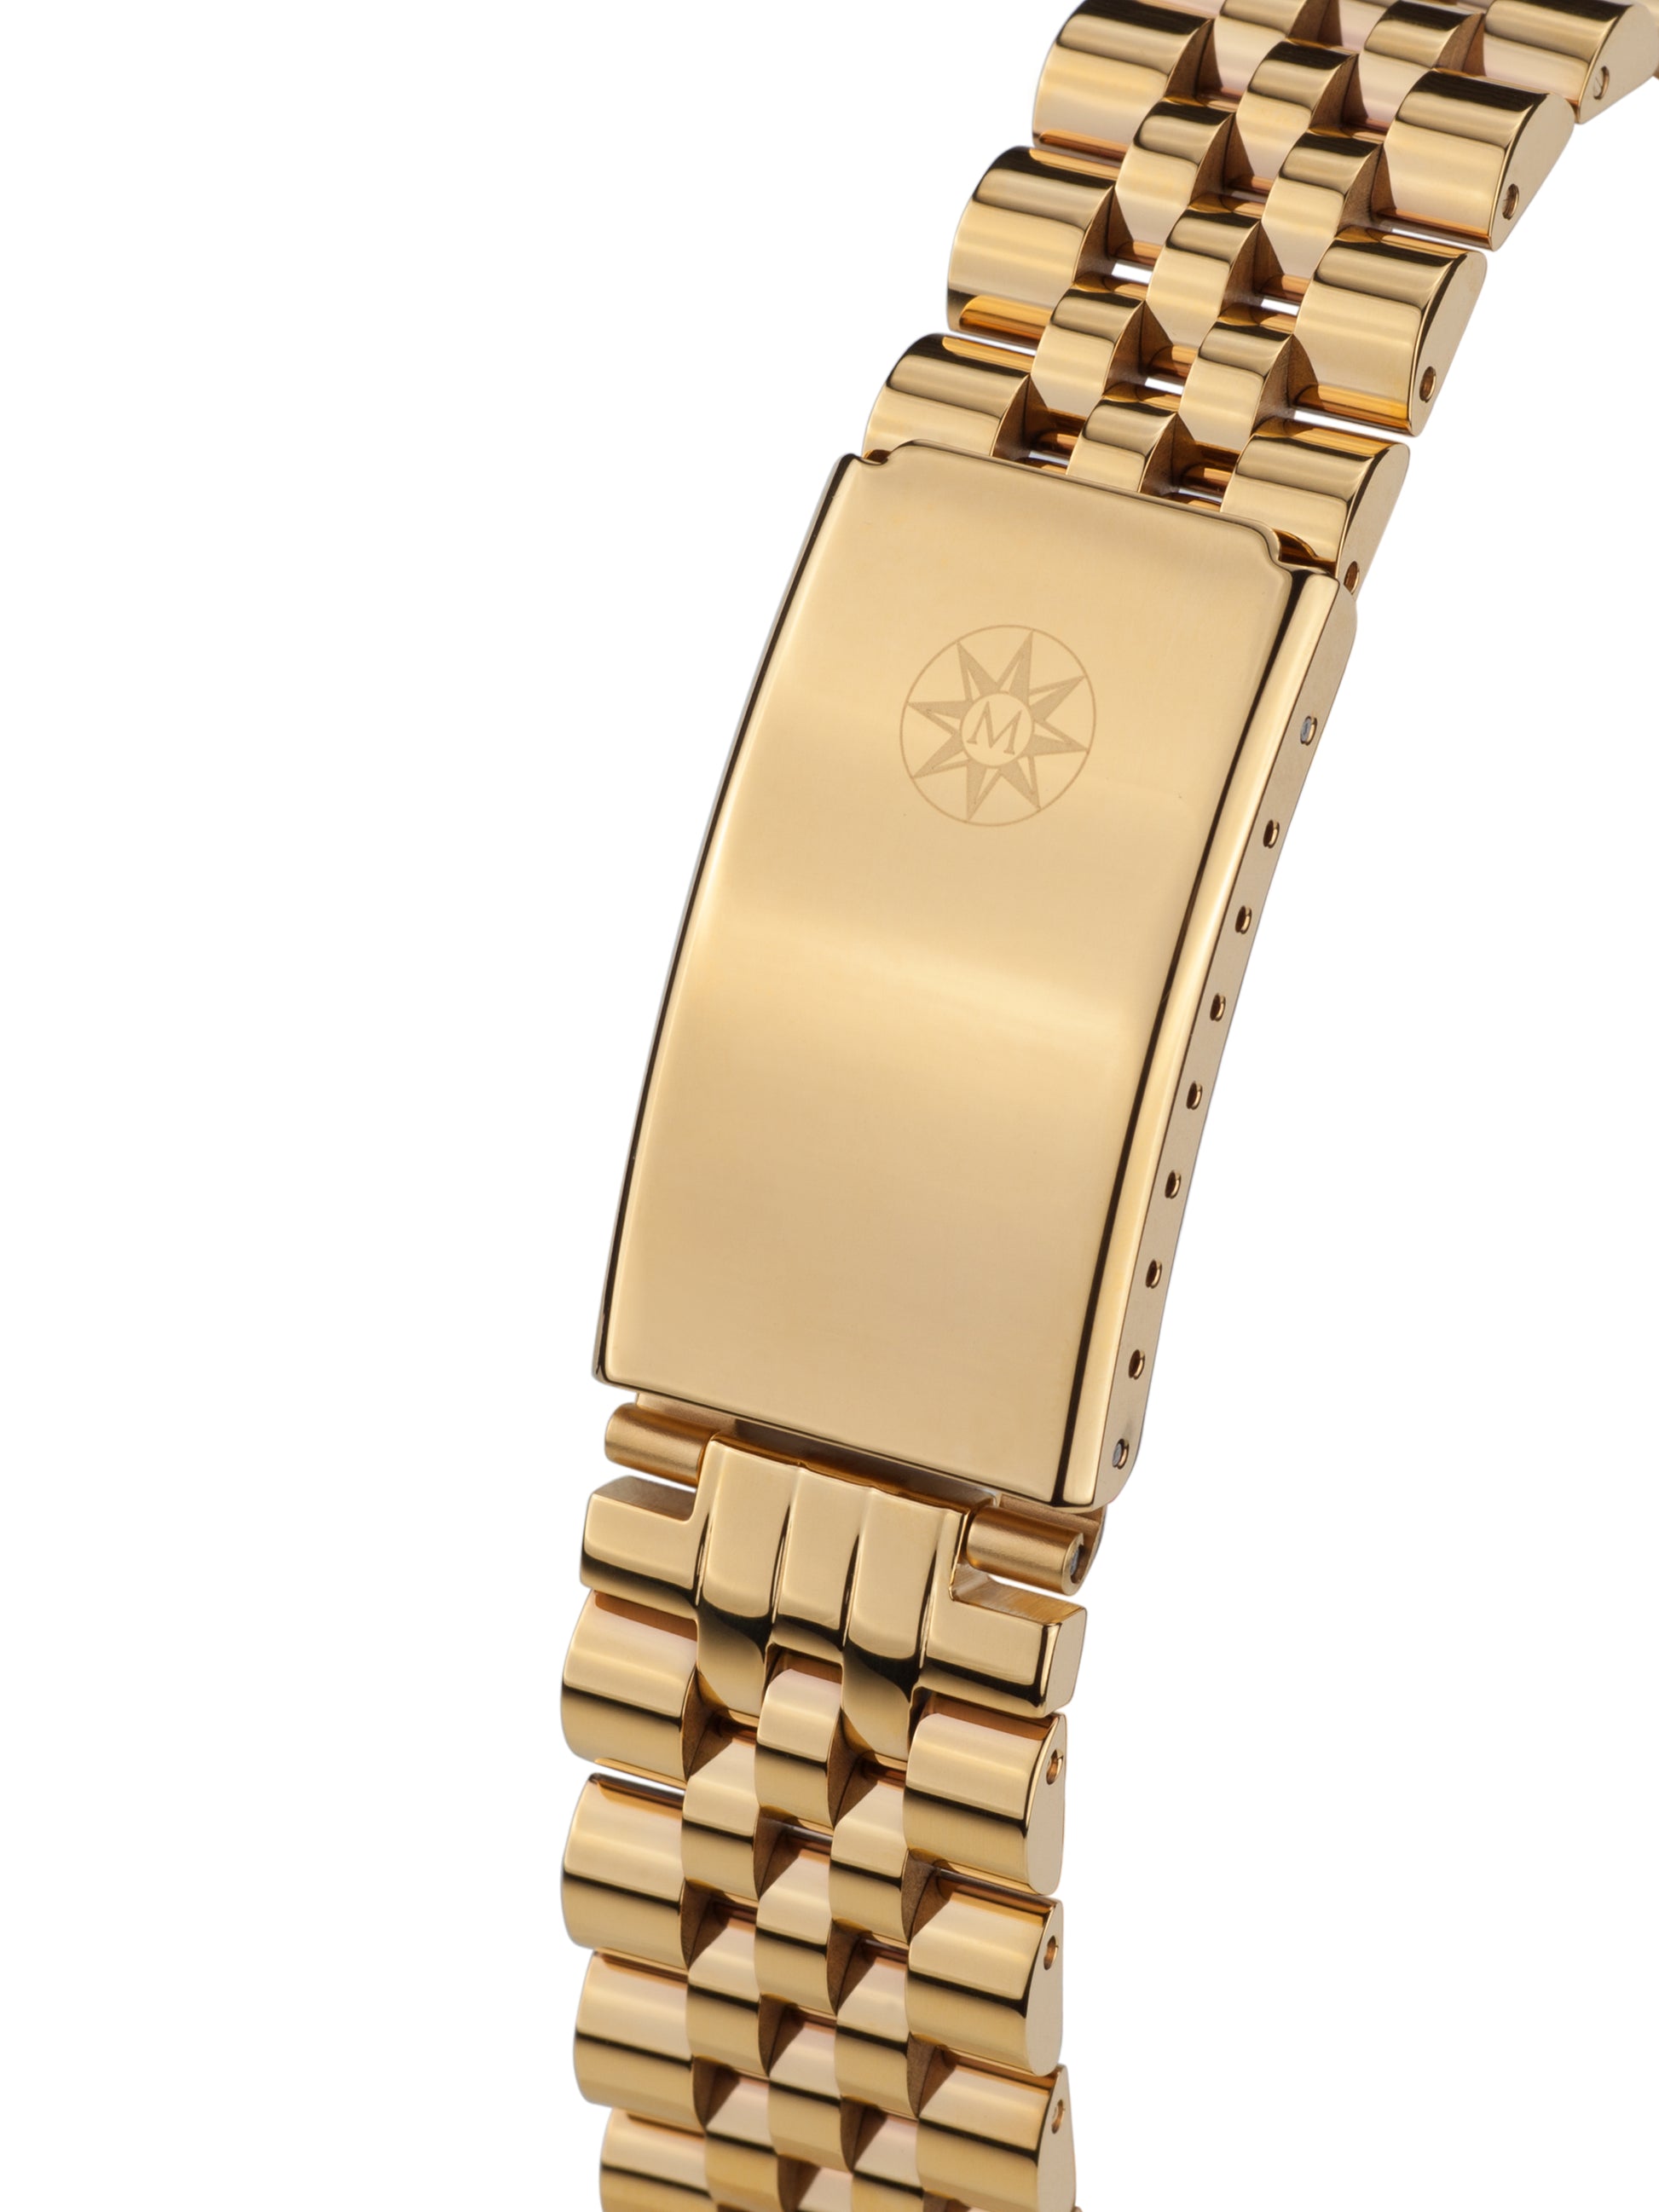 Automatic watches — Beauté de Suisse — Mathis Montabon — Gold IP